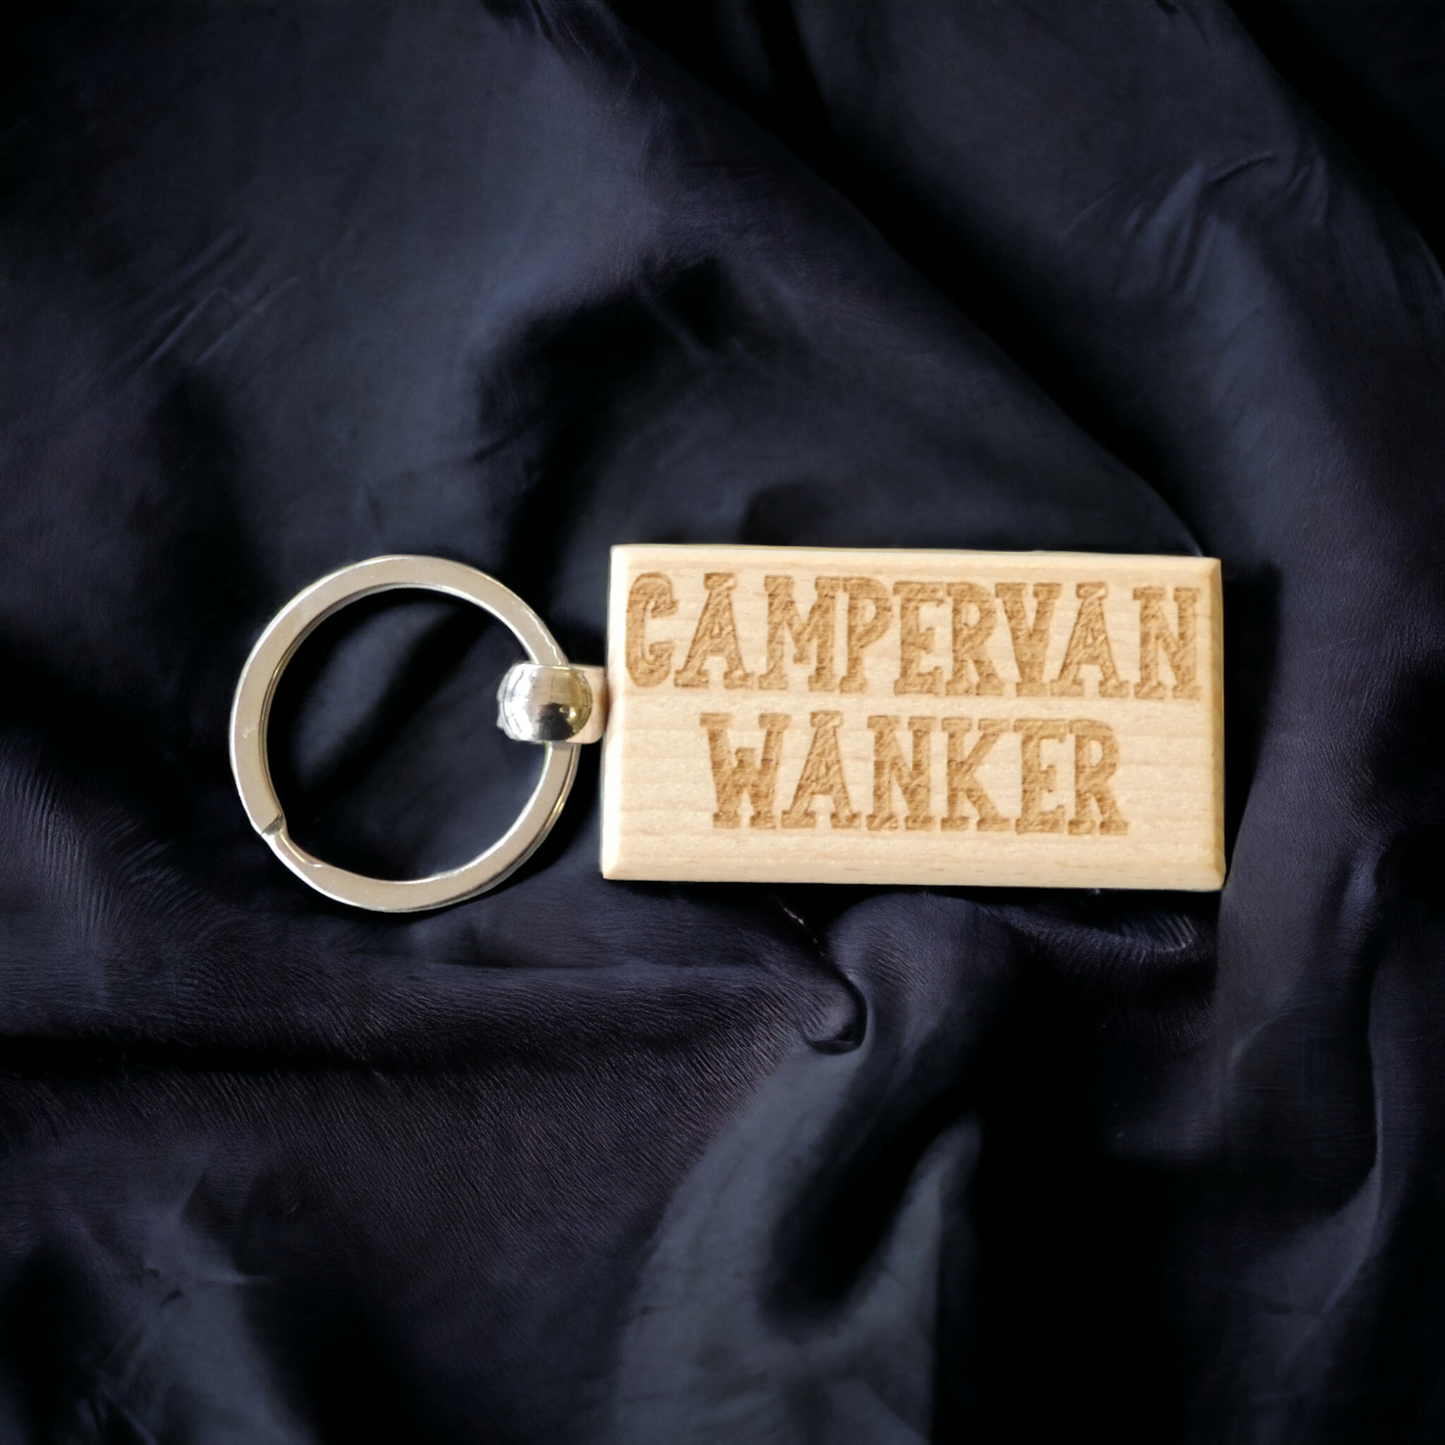 Campervan Keyring Gift Campervan Wanker Cute Engraved Wooden Motorhome Key Fob Fun Novelty Nice Custom Present